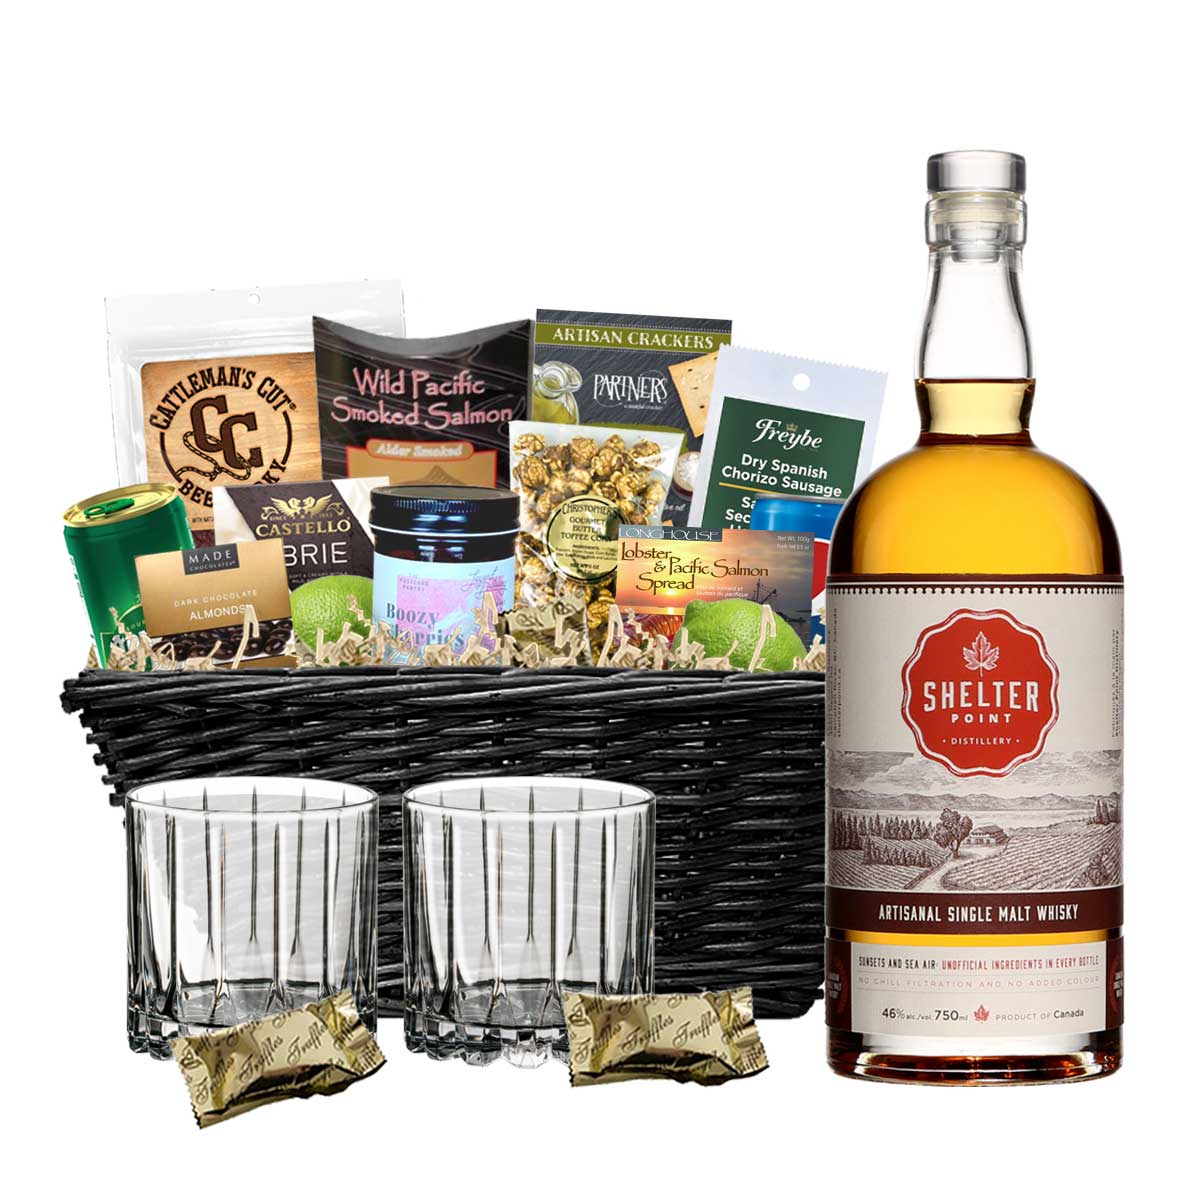 TAG Liquor Stores BC - Shelter Point Artisanal Single Malt Whisky 750ml Gift Basket